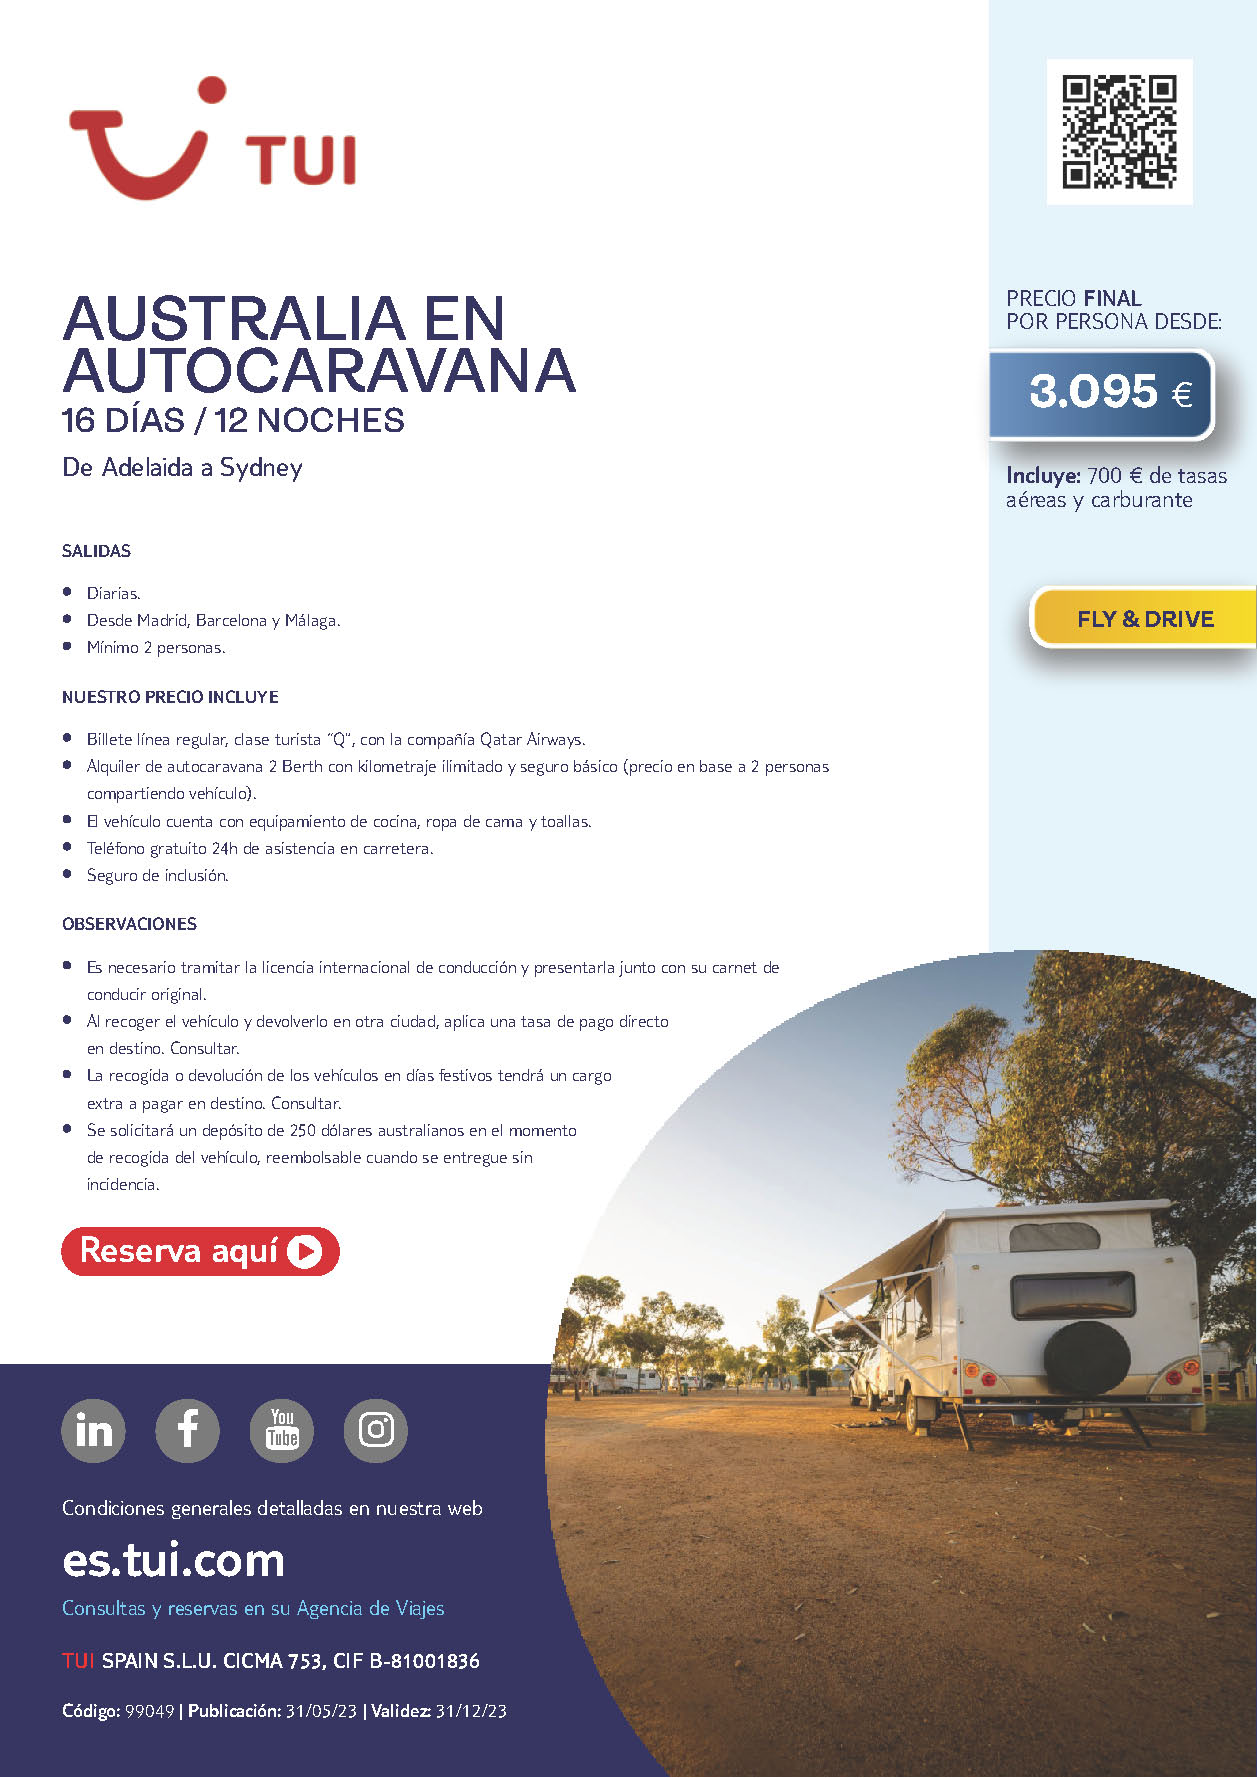 Oferta TUI Australia en Autocaravana 2023 16 dias salidas desde Madrid Barcelona y Malaga vuelos Qatar Airways